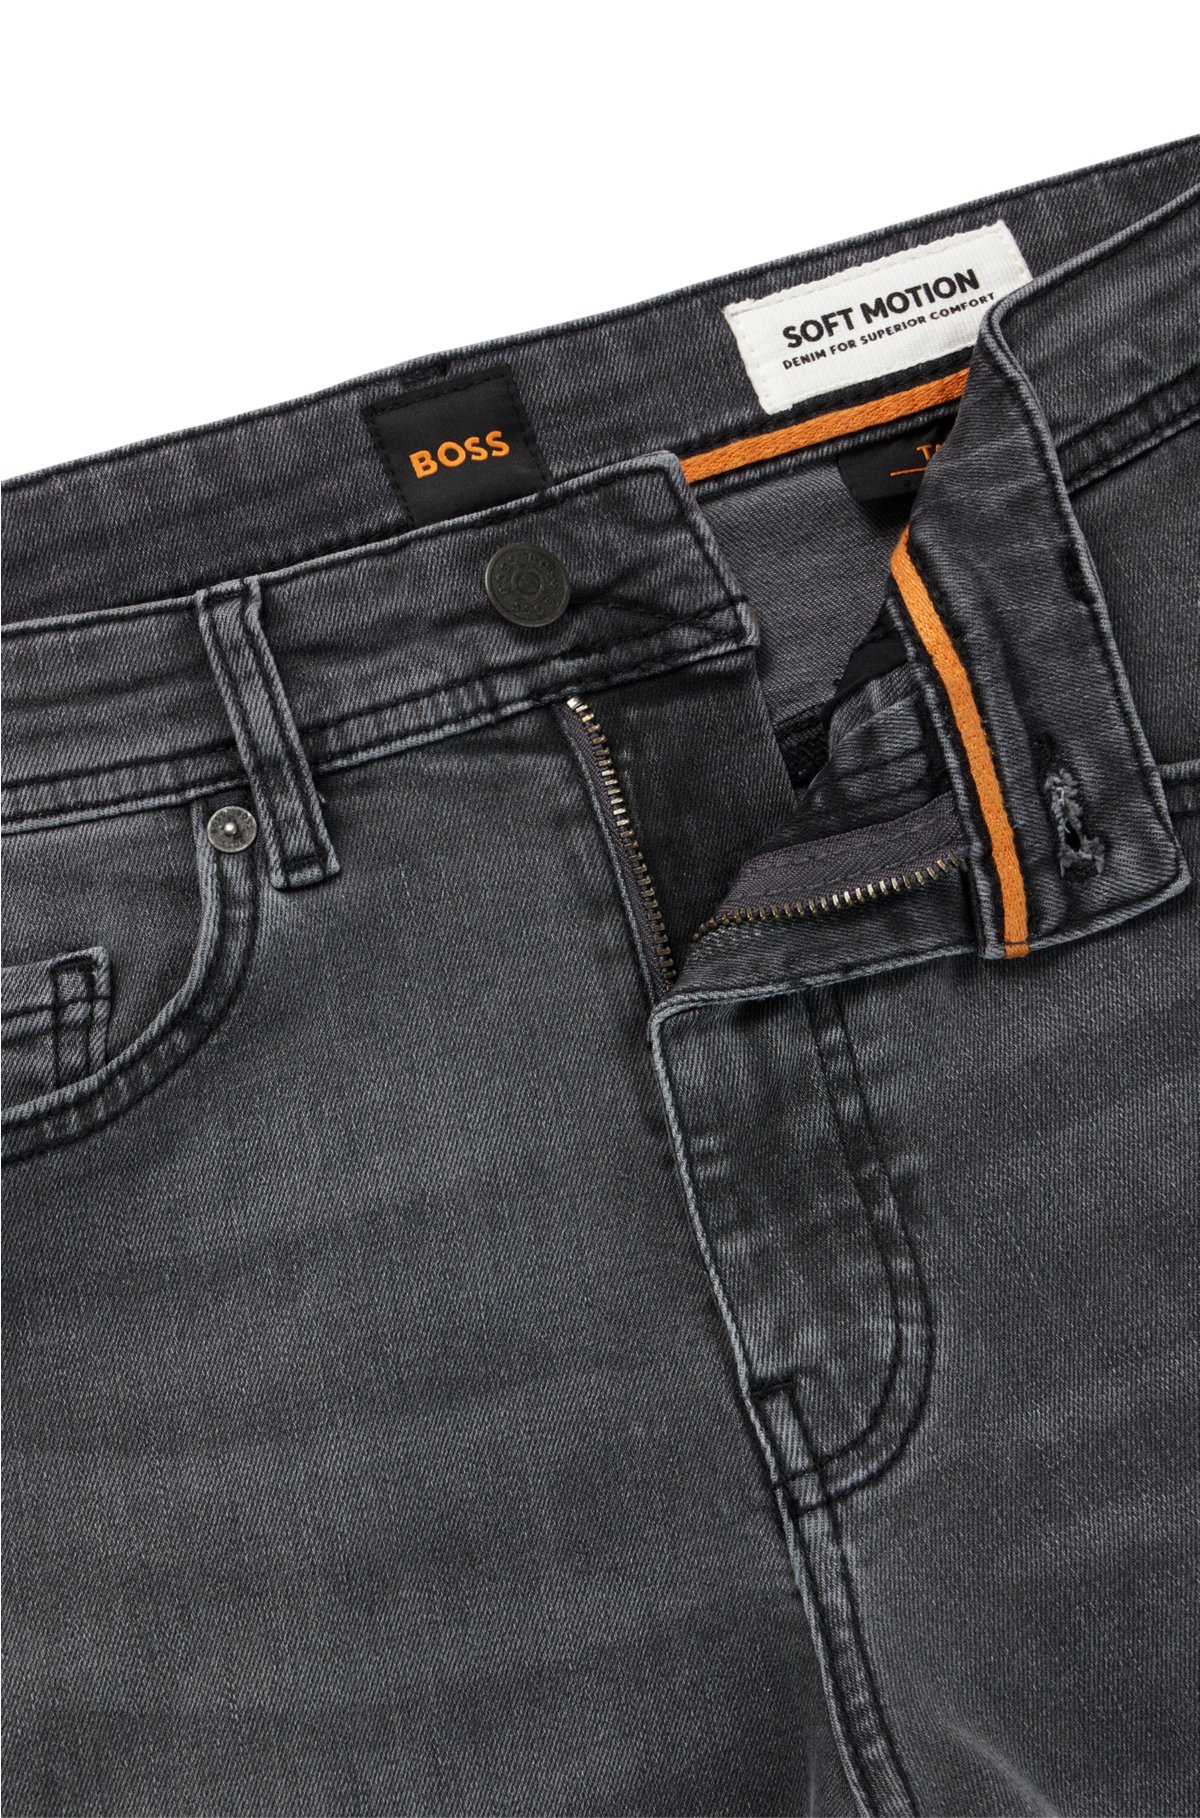 gewaschenem BOSS - Super-Stretch-Denim Jeans aus Tapered-Fit Schwarze